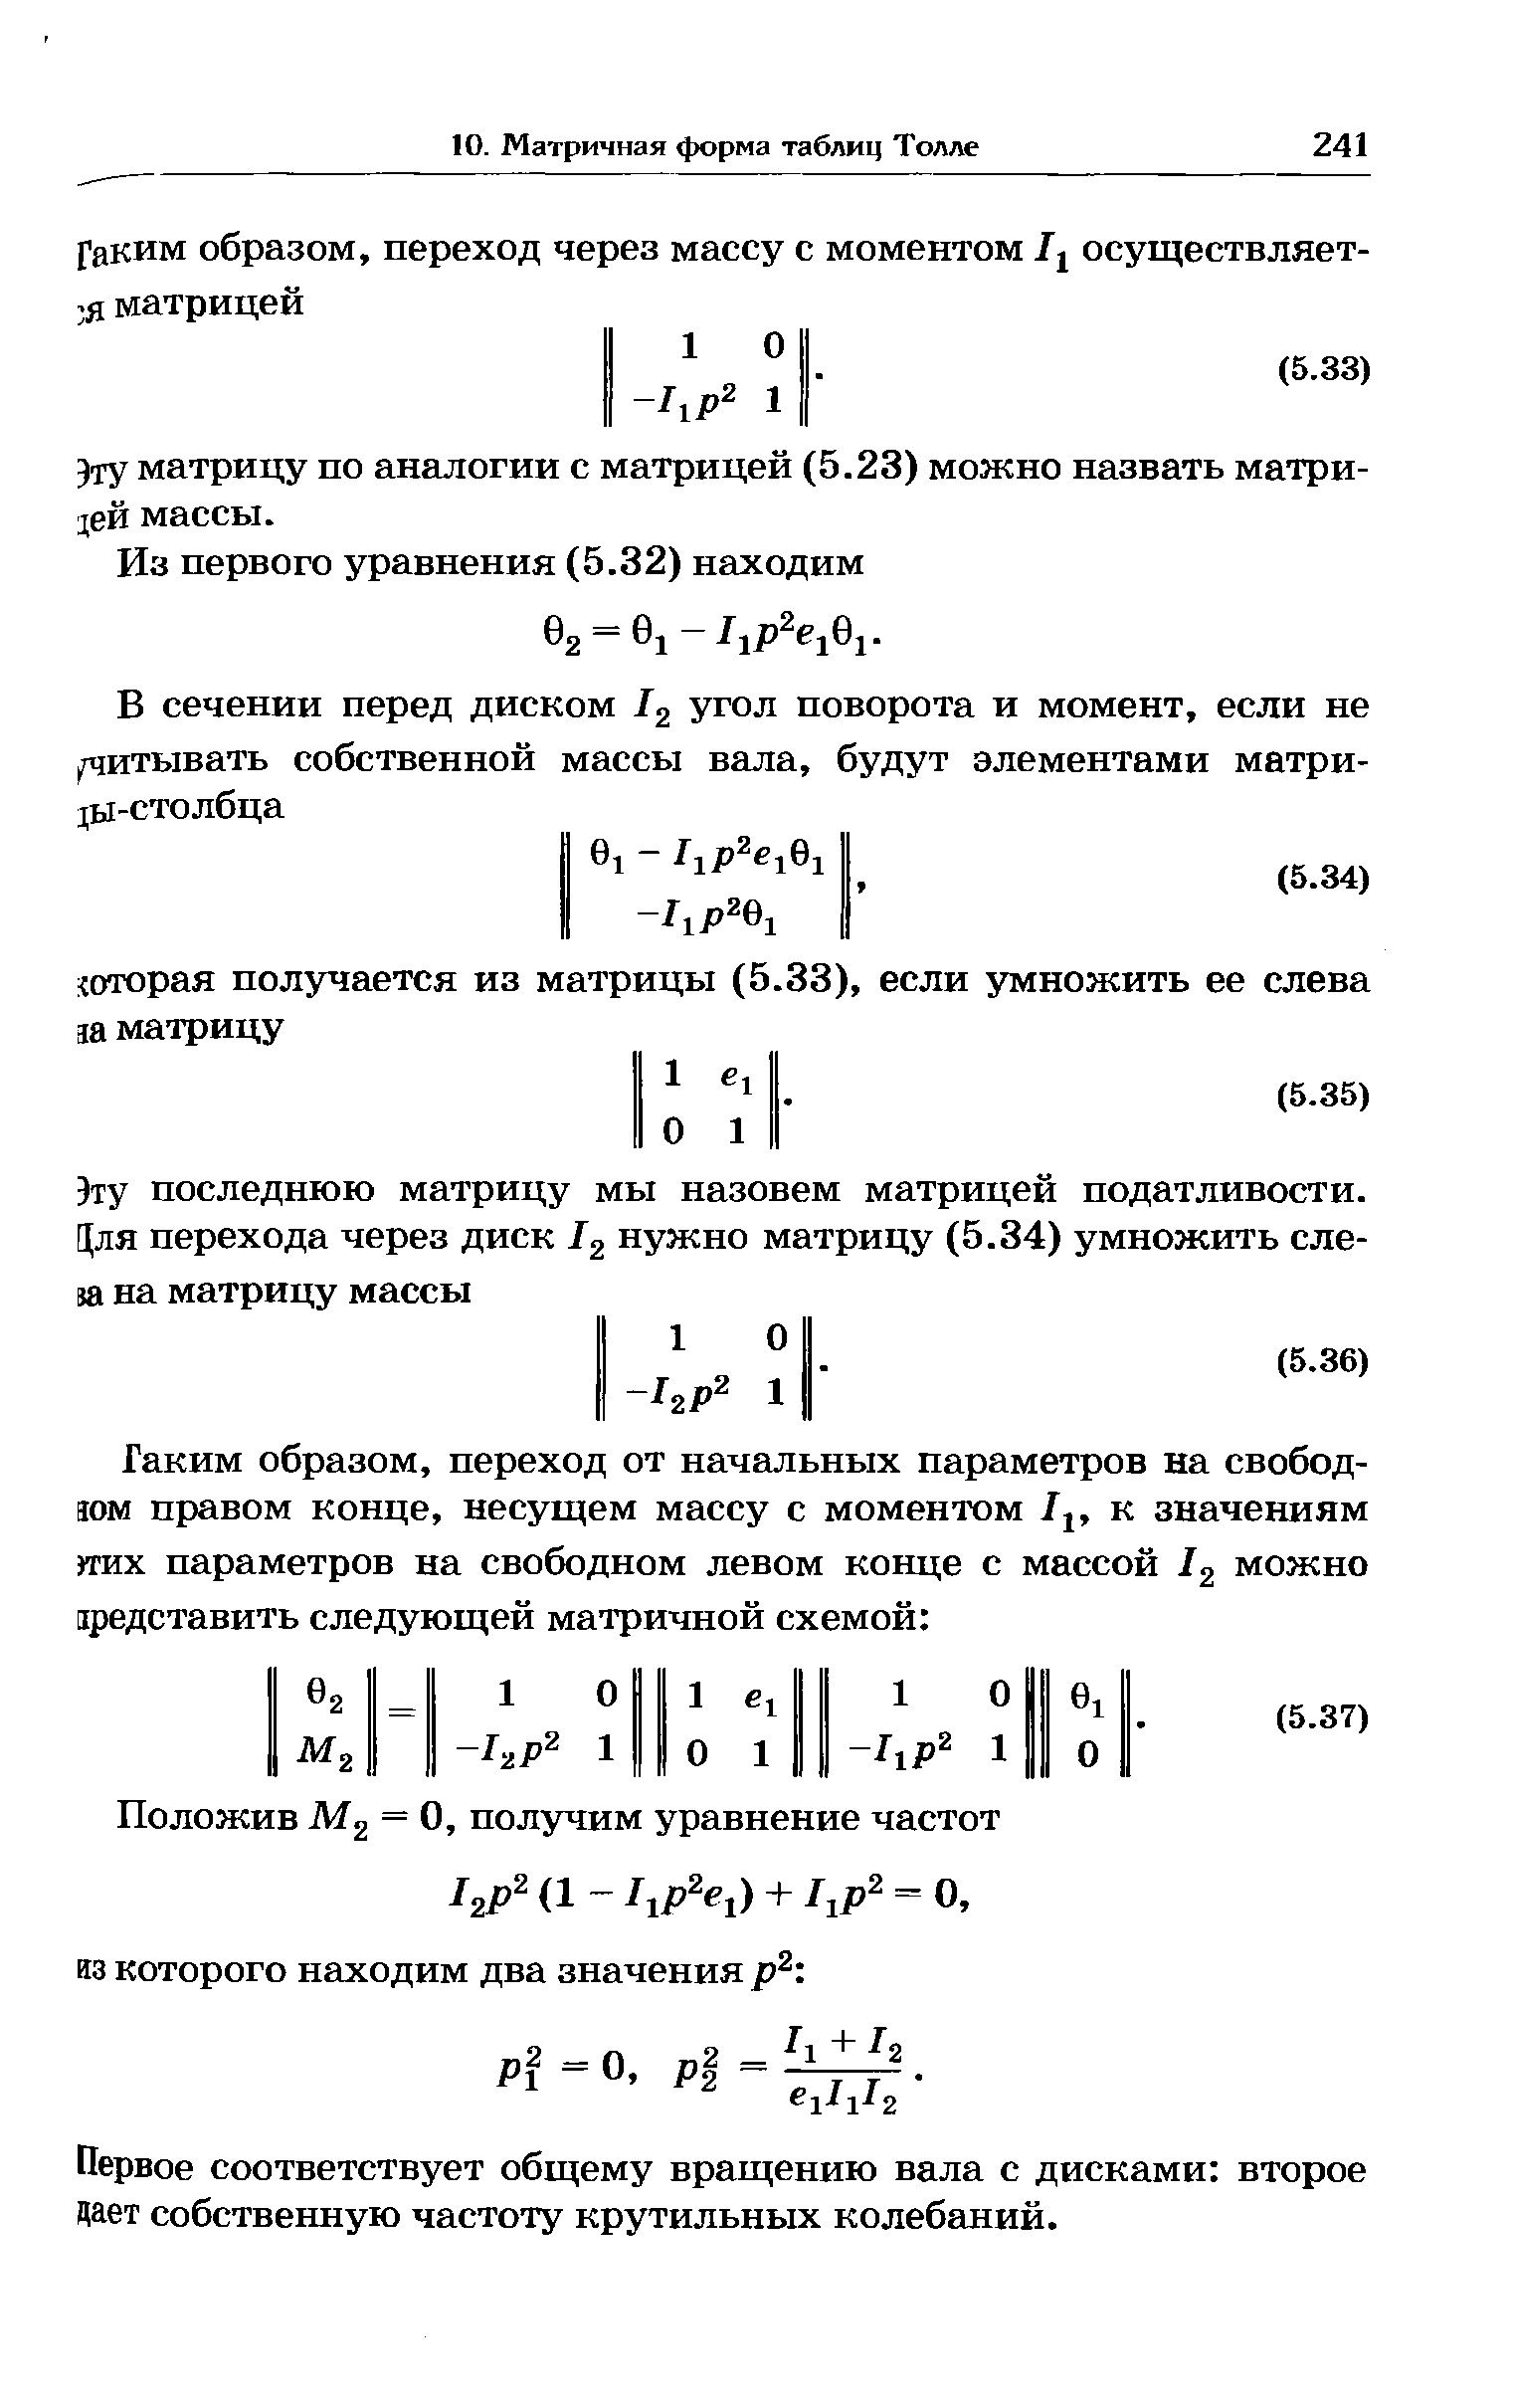 Зту матрицу по аналогии с матрицей (5.23) можно назвать матрицей массы.
